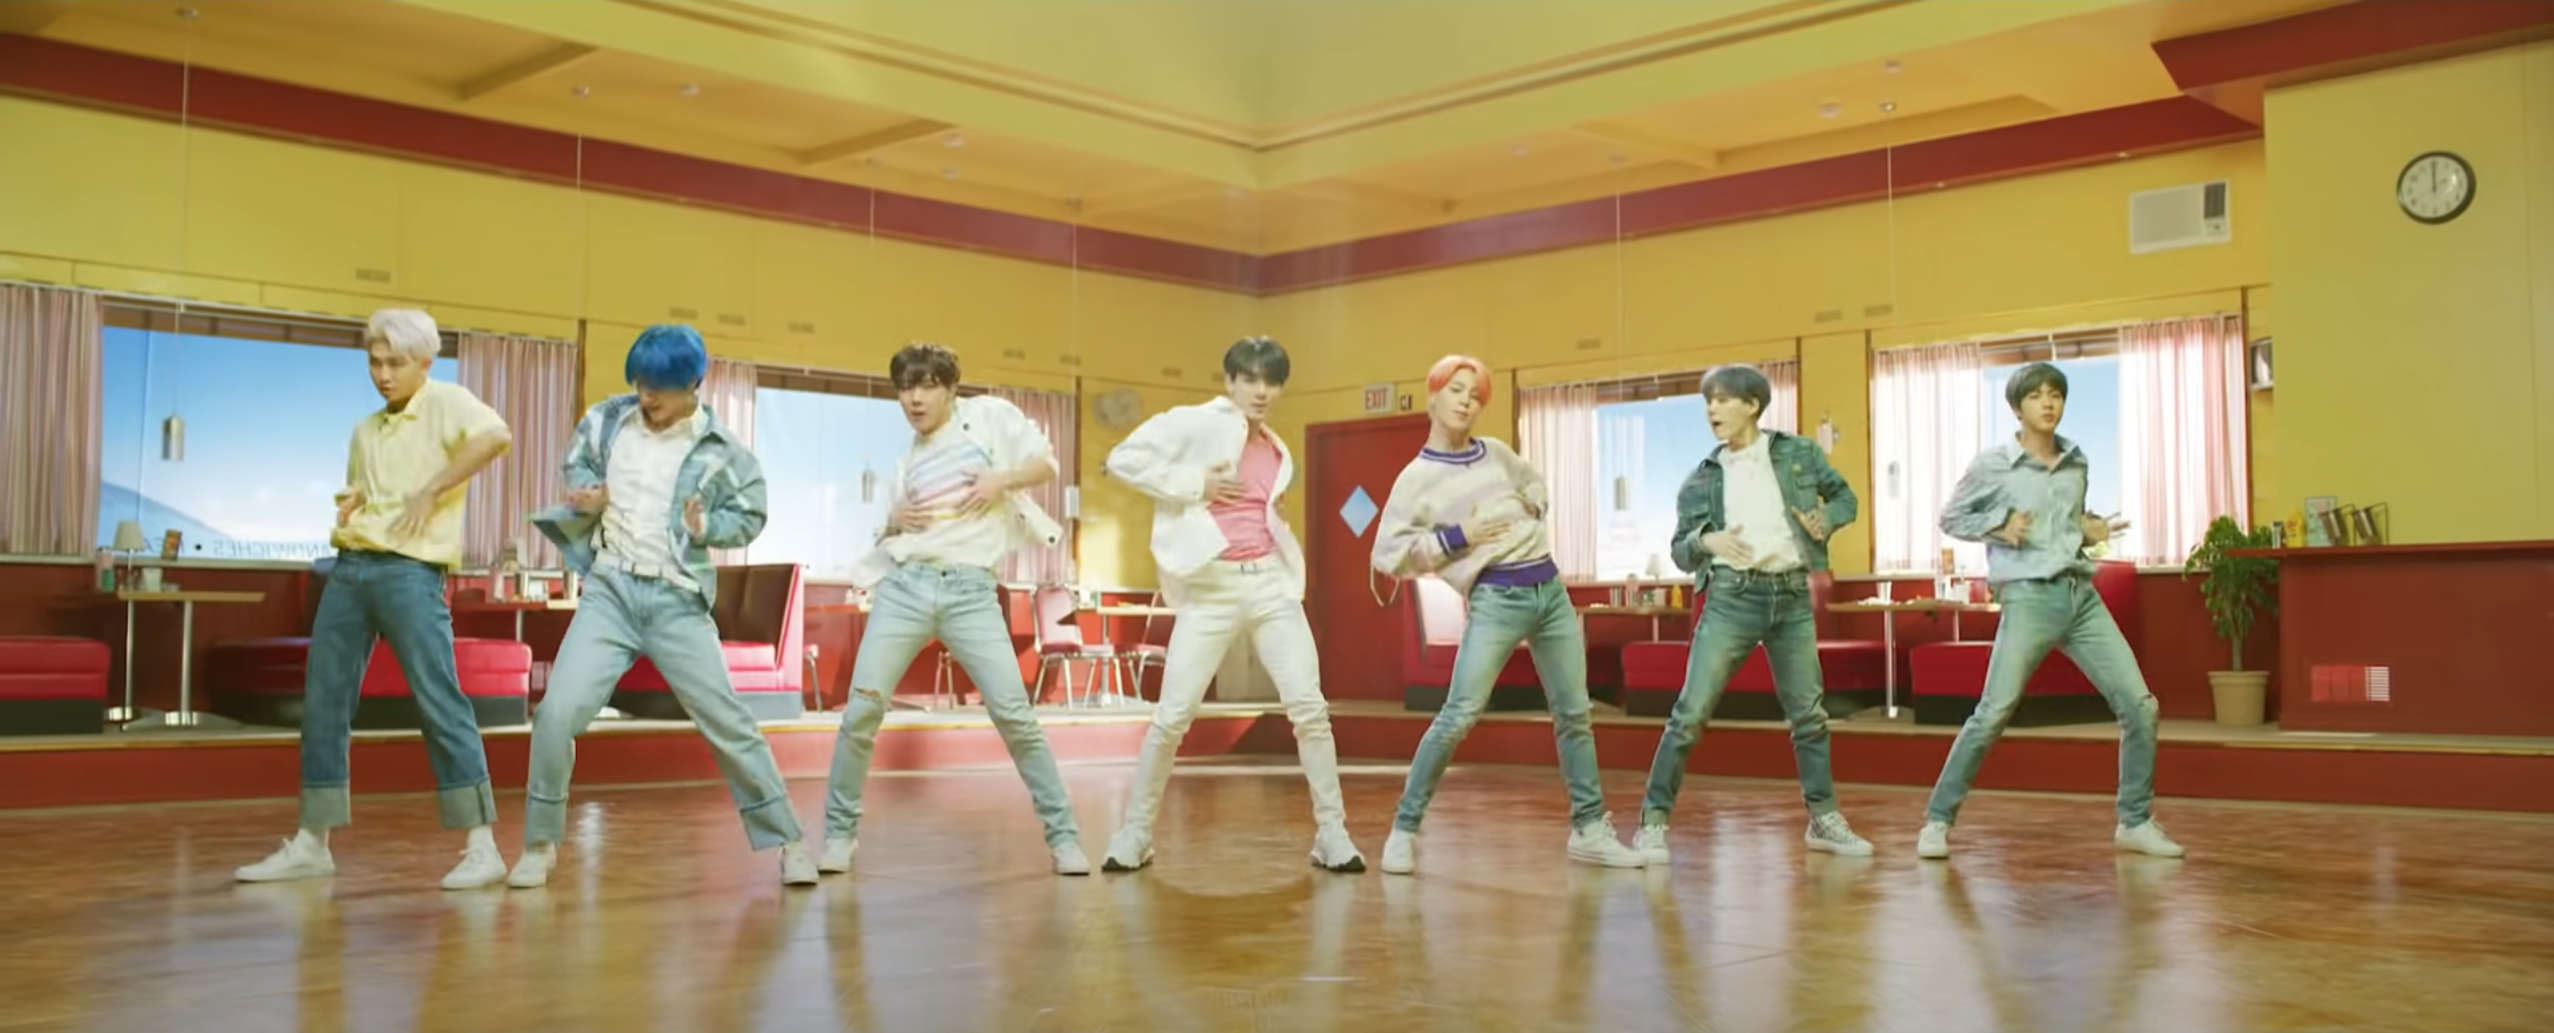 K-pop dance - BTS Boy With Luv